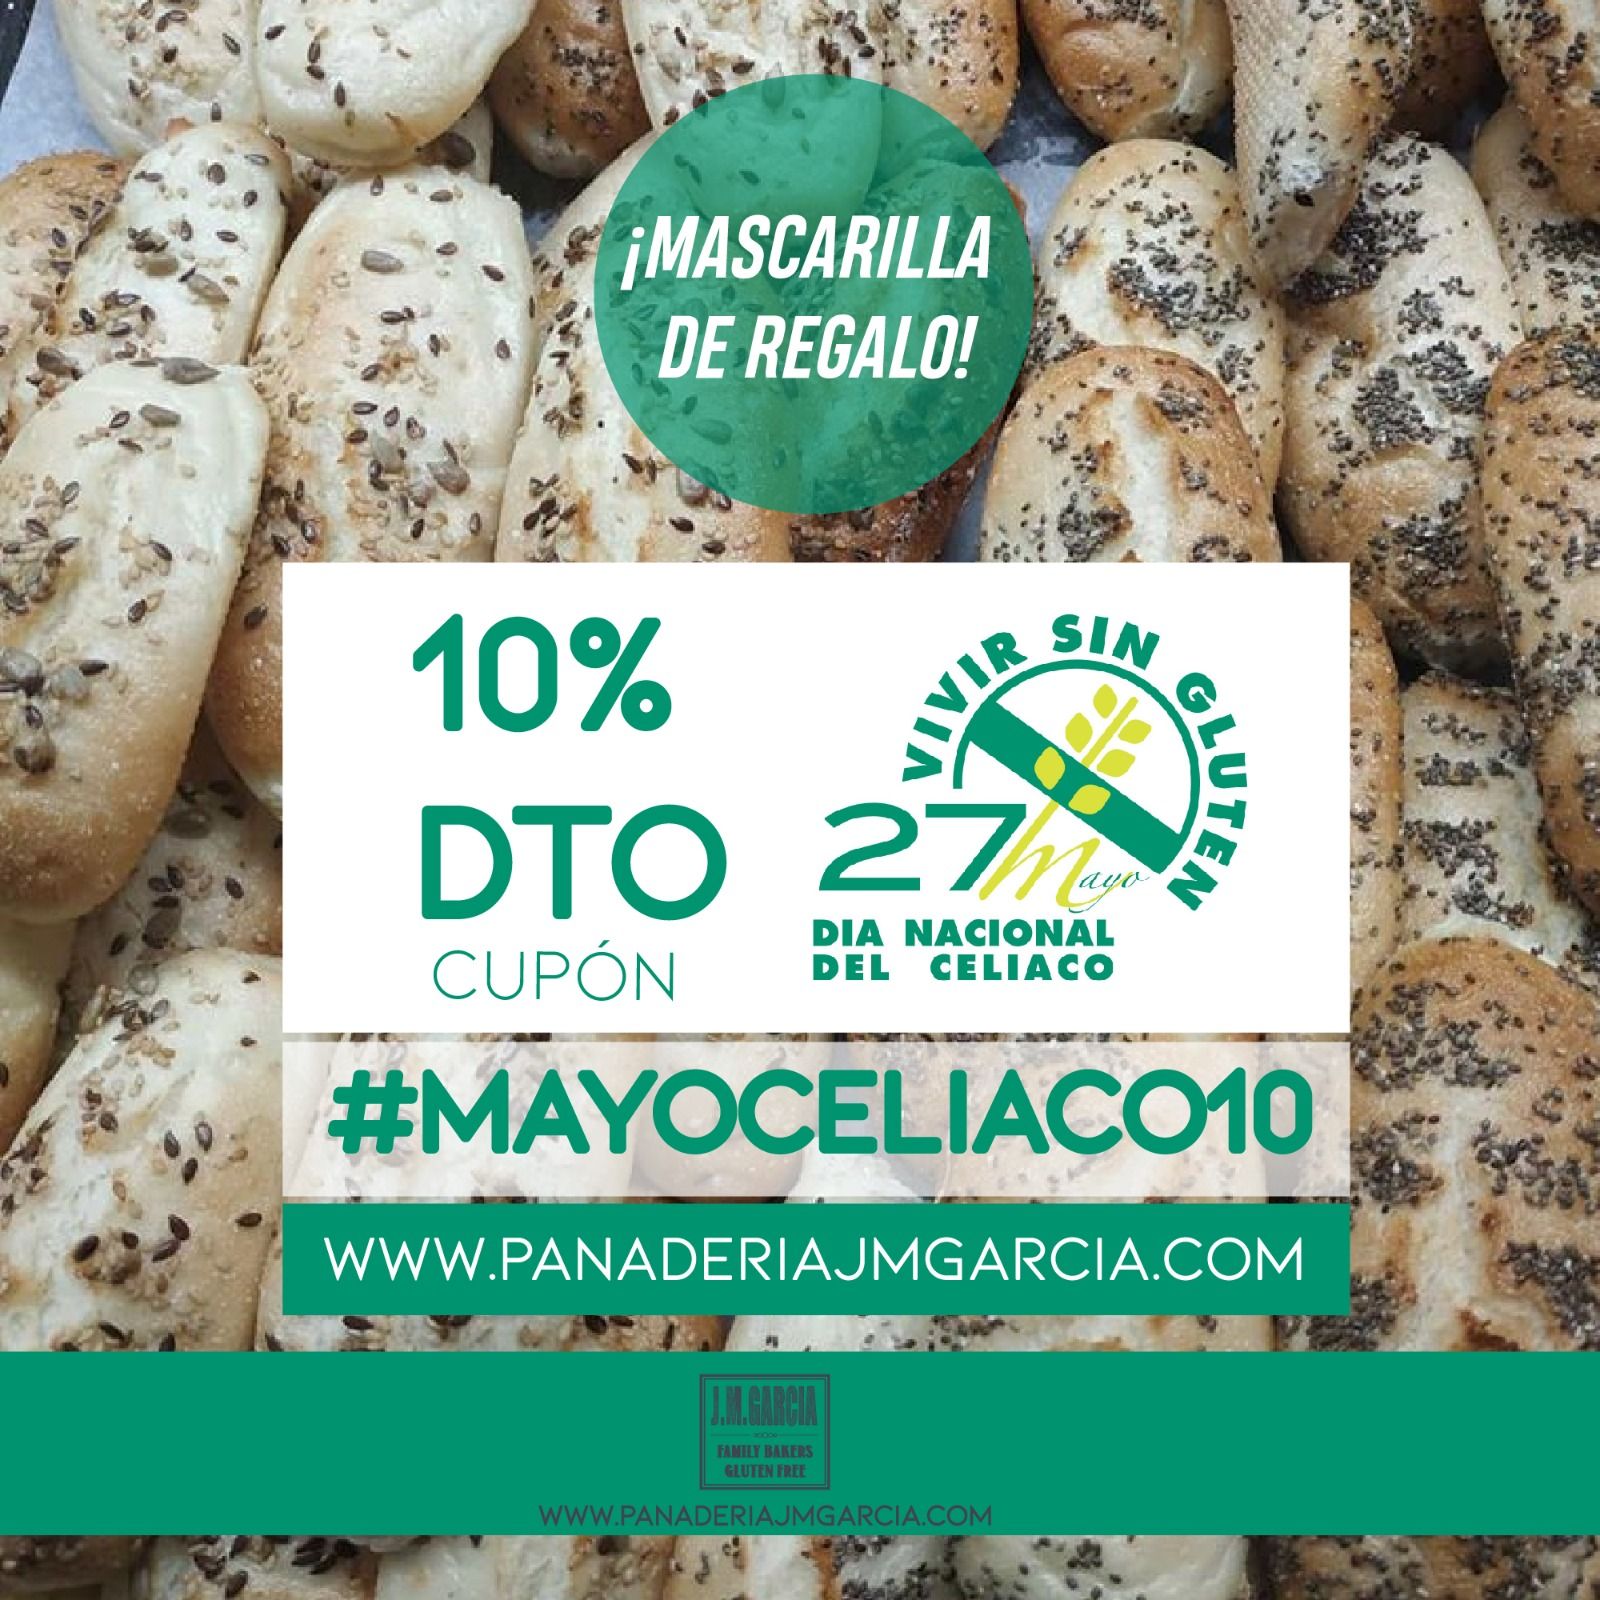 mayo_celiaco-www.panaderiajmgarcia.com-cupon_10-descuento-panaderia_sin_gluten_alicante